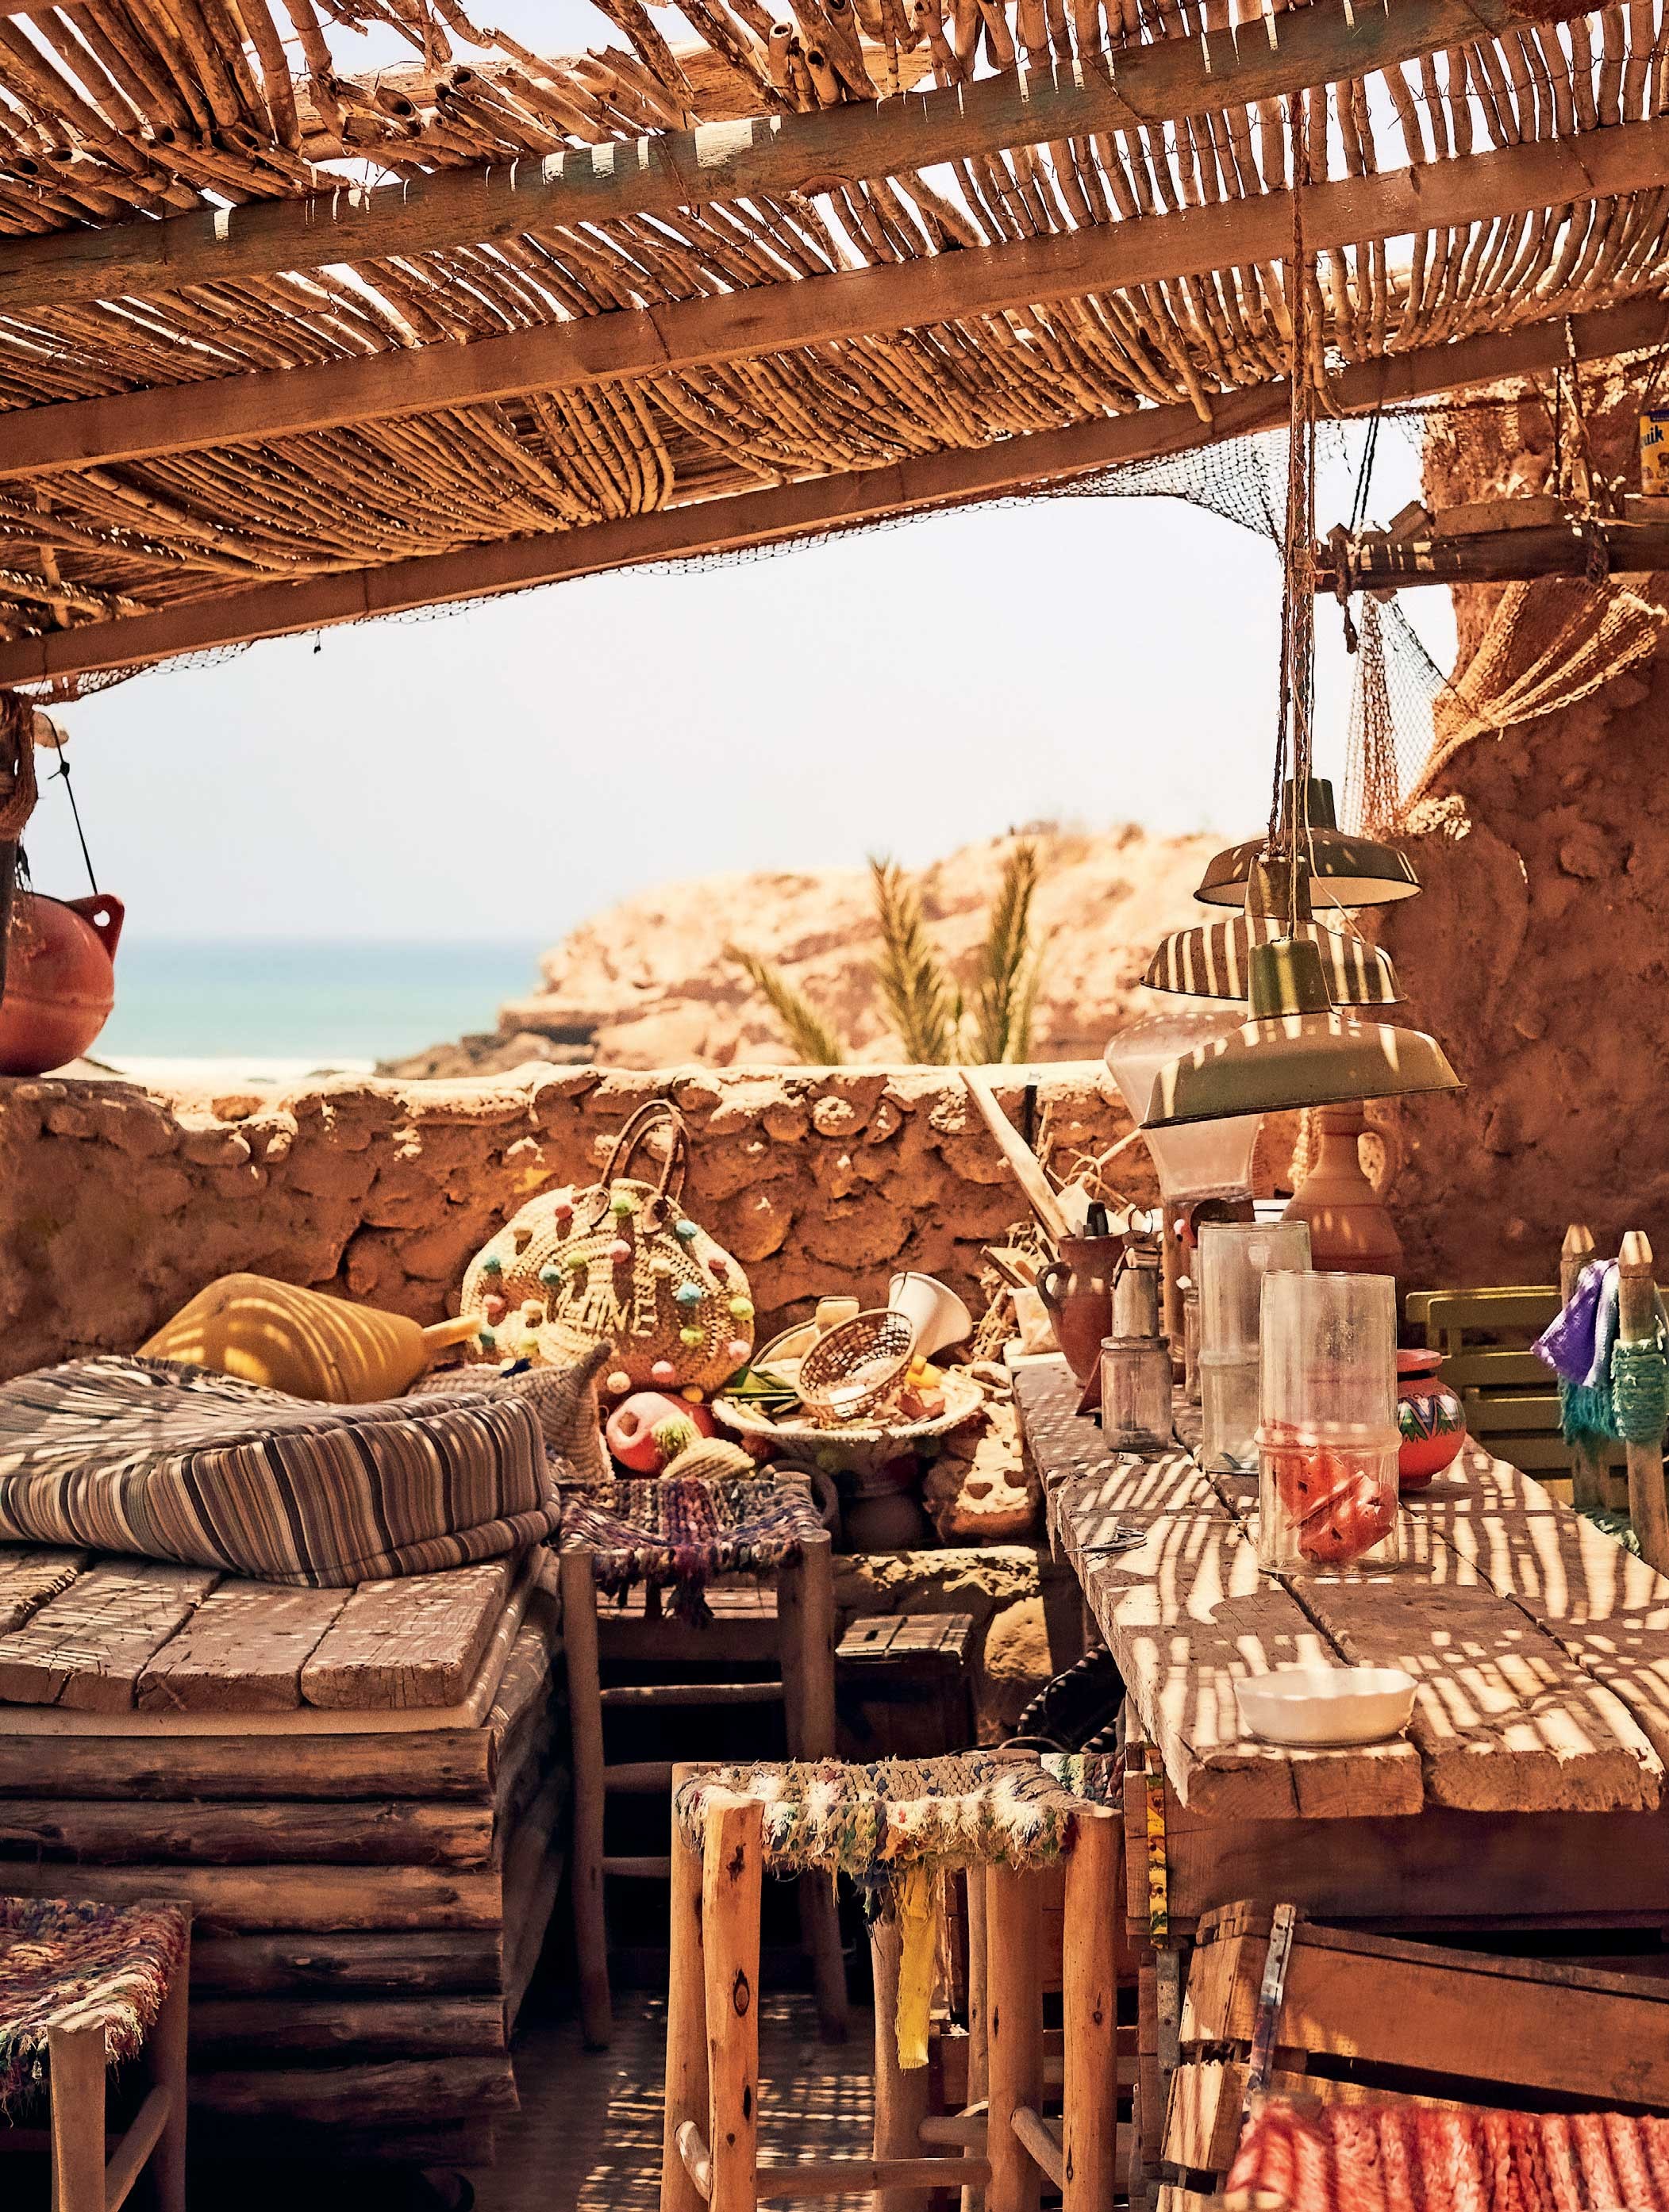 Taghazout: você precisa conhecer essa praia paradisíaca no Marrocos (Foto: Oliver Pilcher)